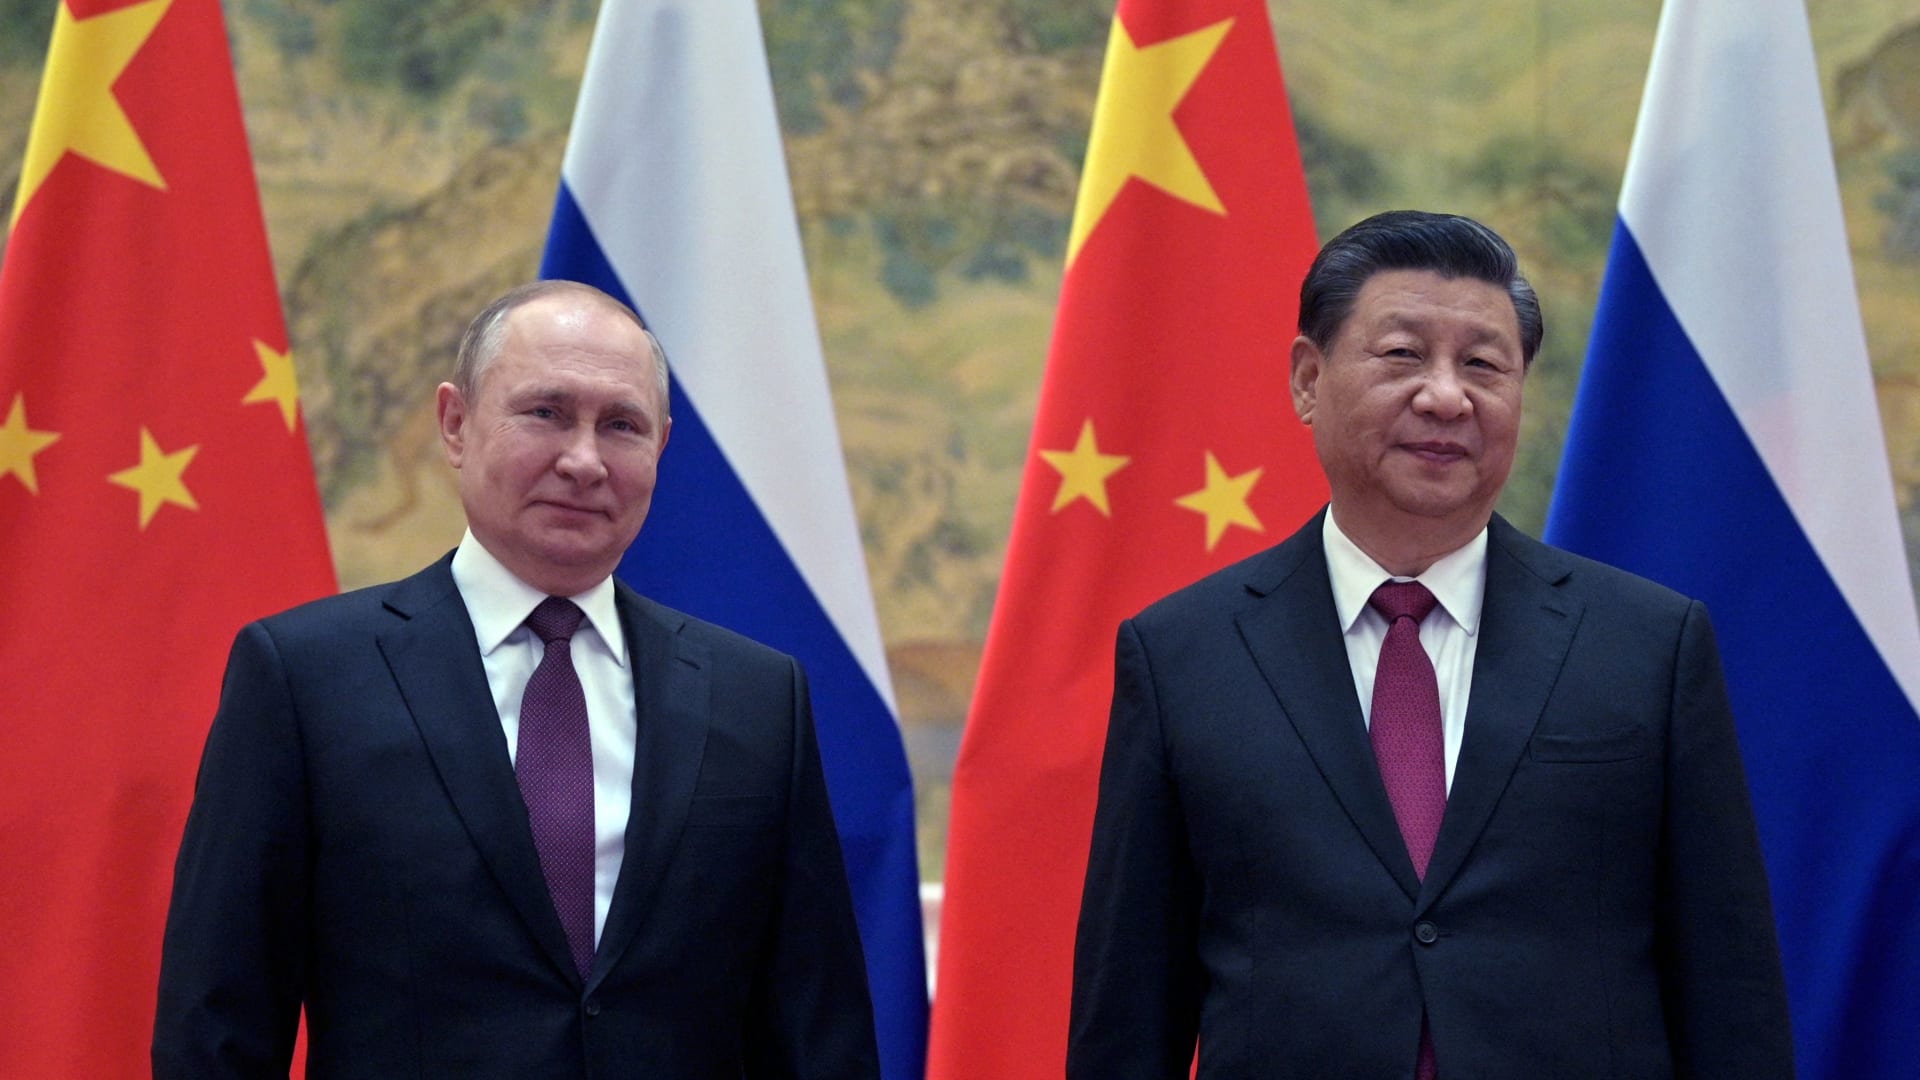 الصين: الحديث عن طلب روسيا مساعدتنا العسكرية "أكاذيب" تروجها أمريكا